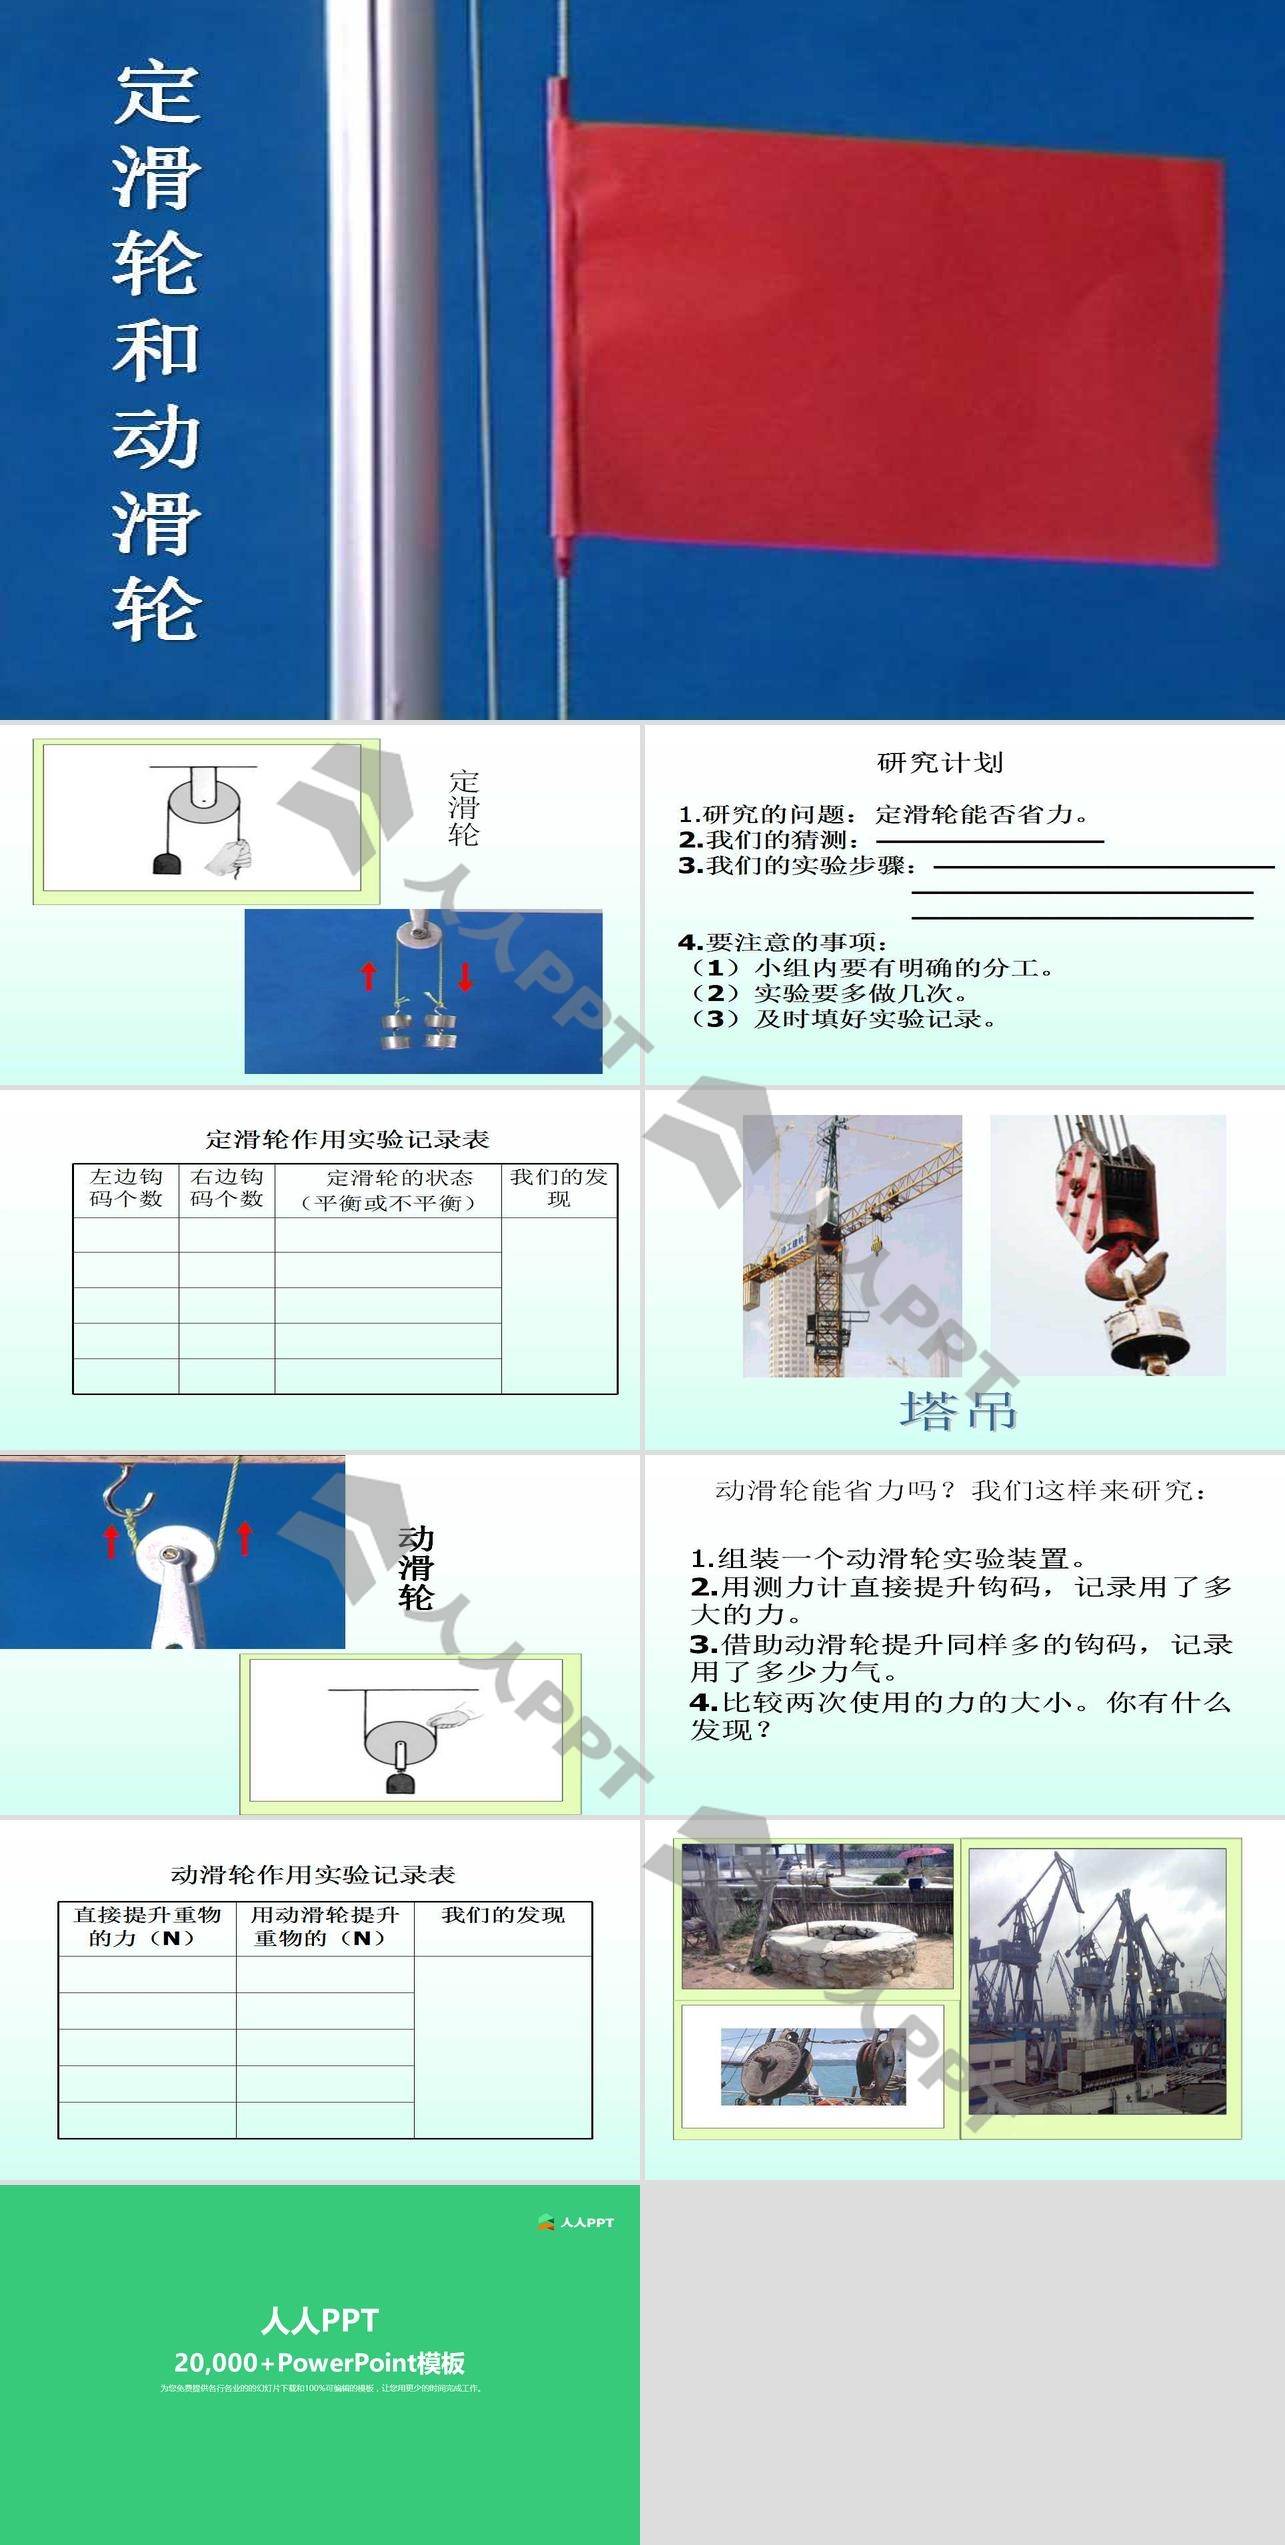 《定滑轮和动滑轮》工具和机械PPT课件2长图